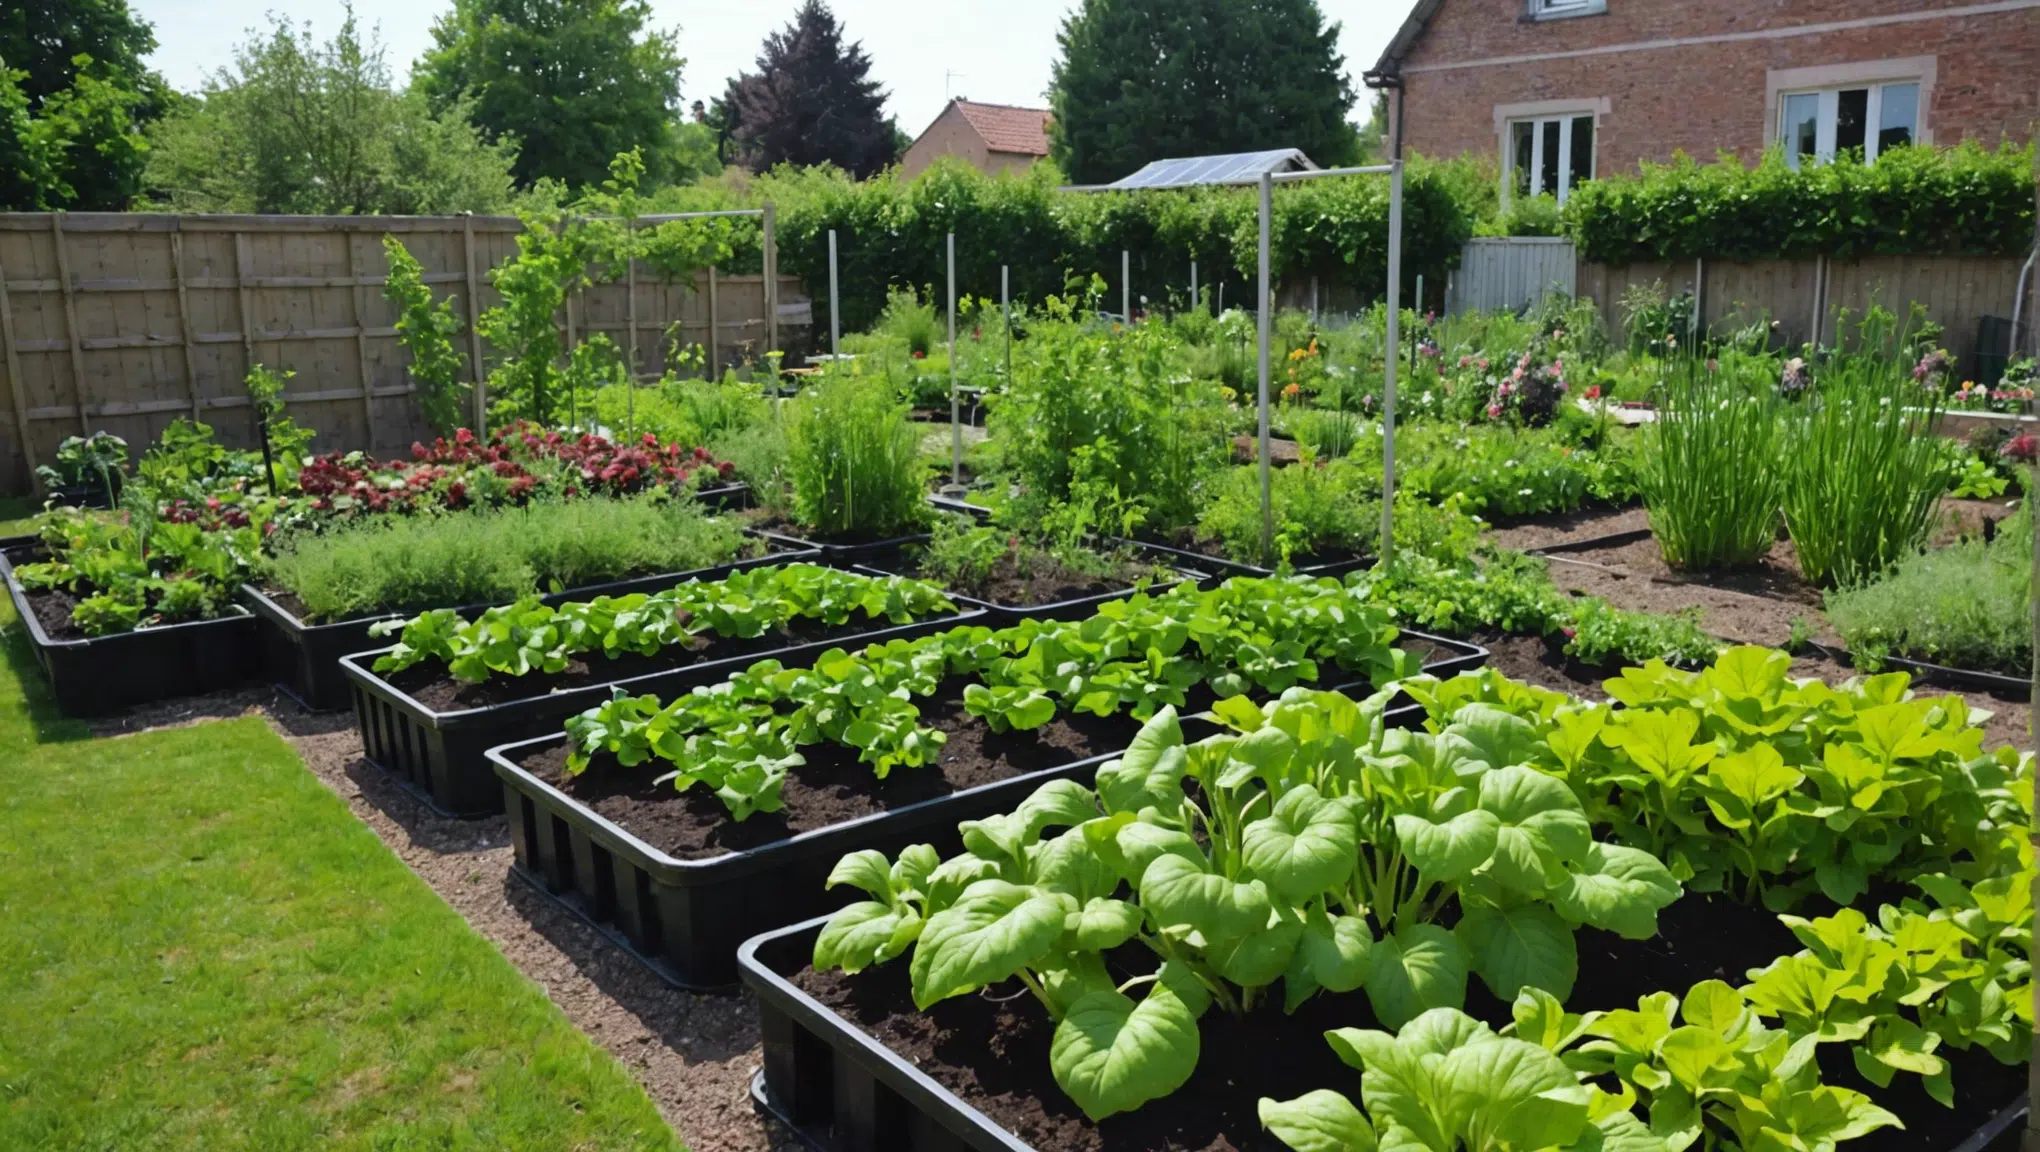 découvrez comment cultiver un jardin bio ultra-productif grâce à ces astuces simples et efficaces.